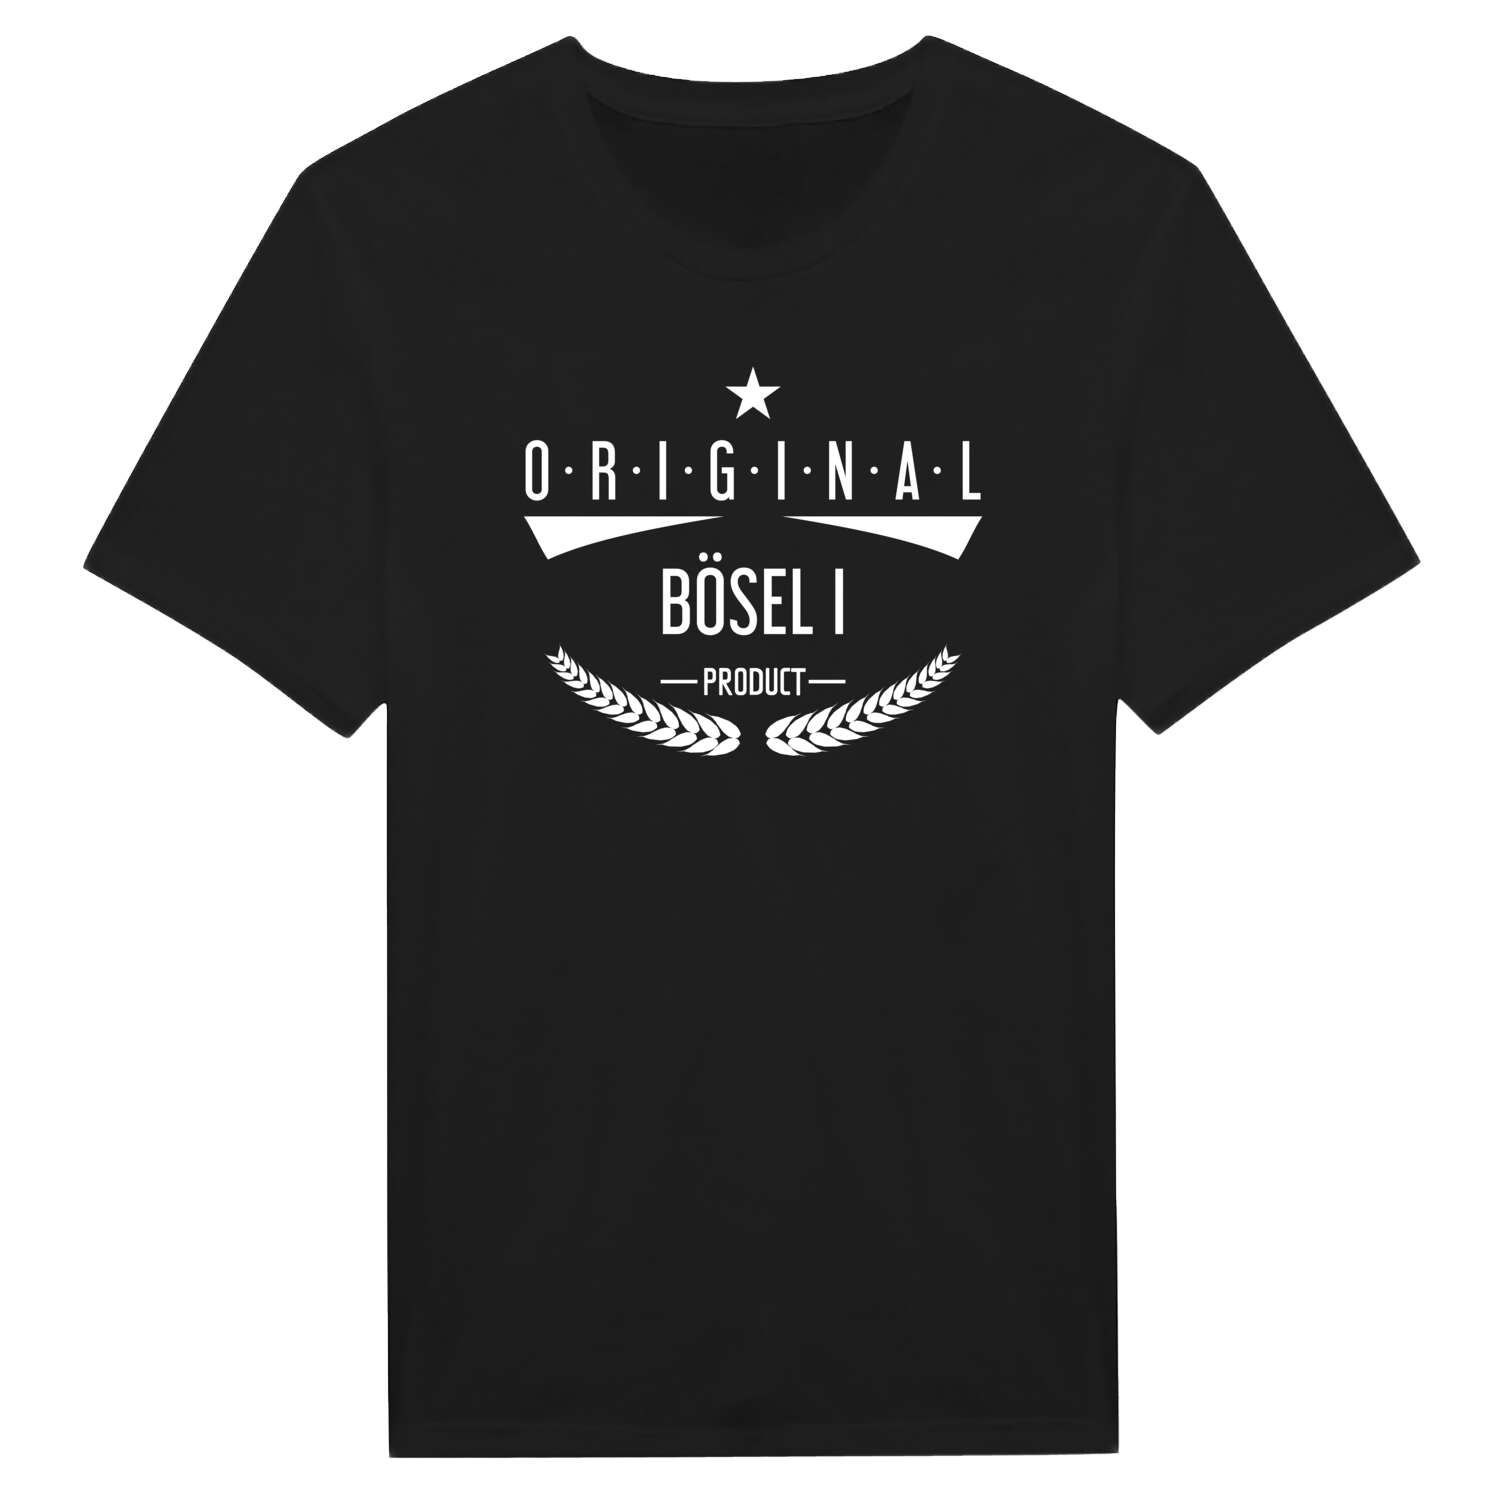 Bösel I T-Shirt »Original Product«